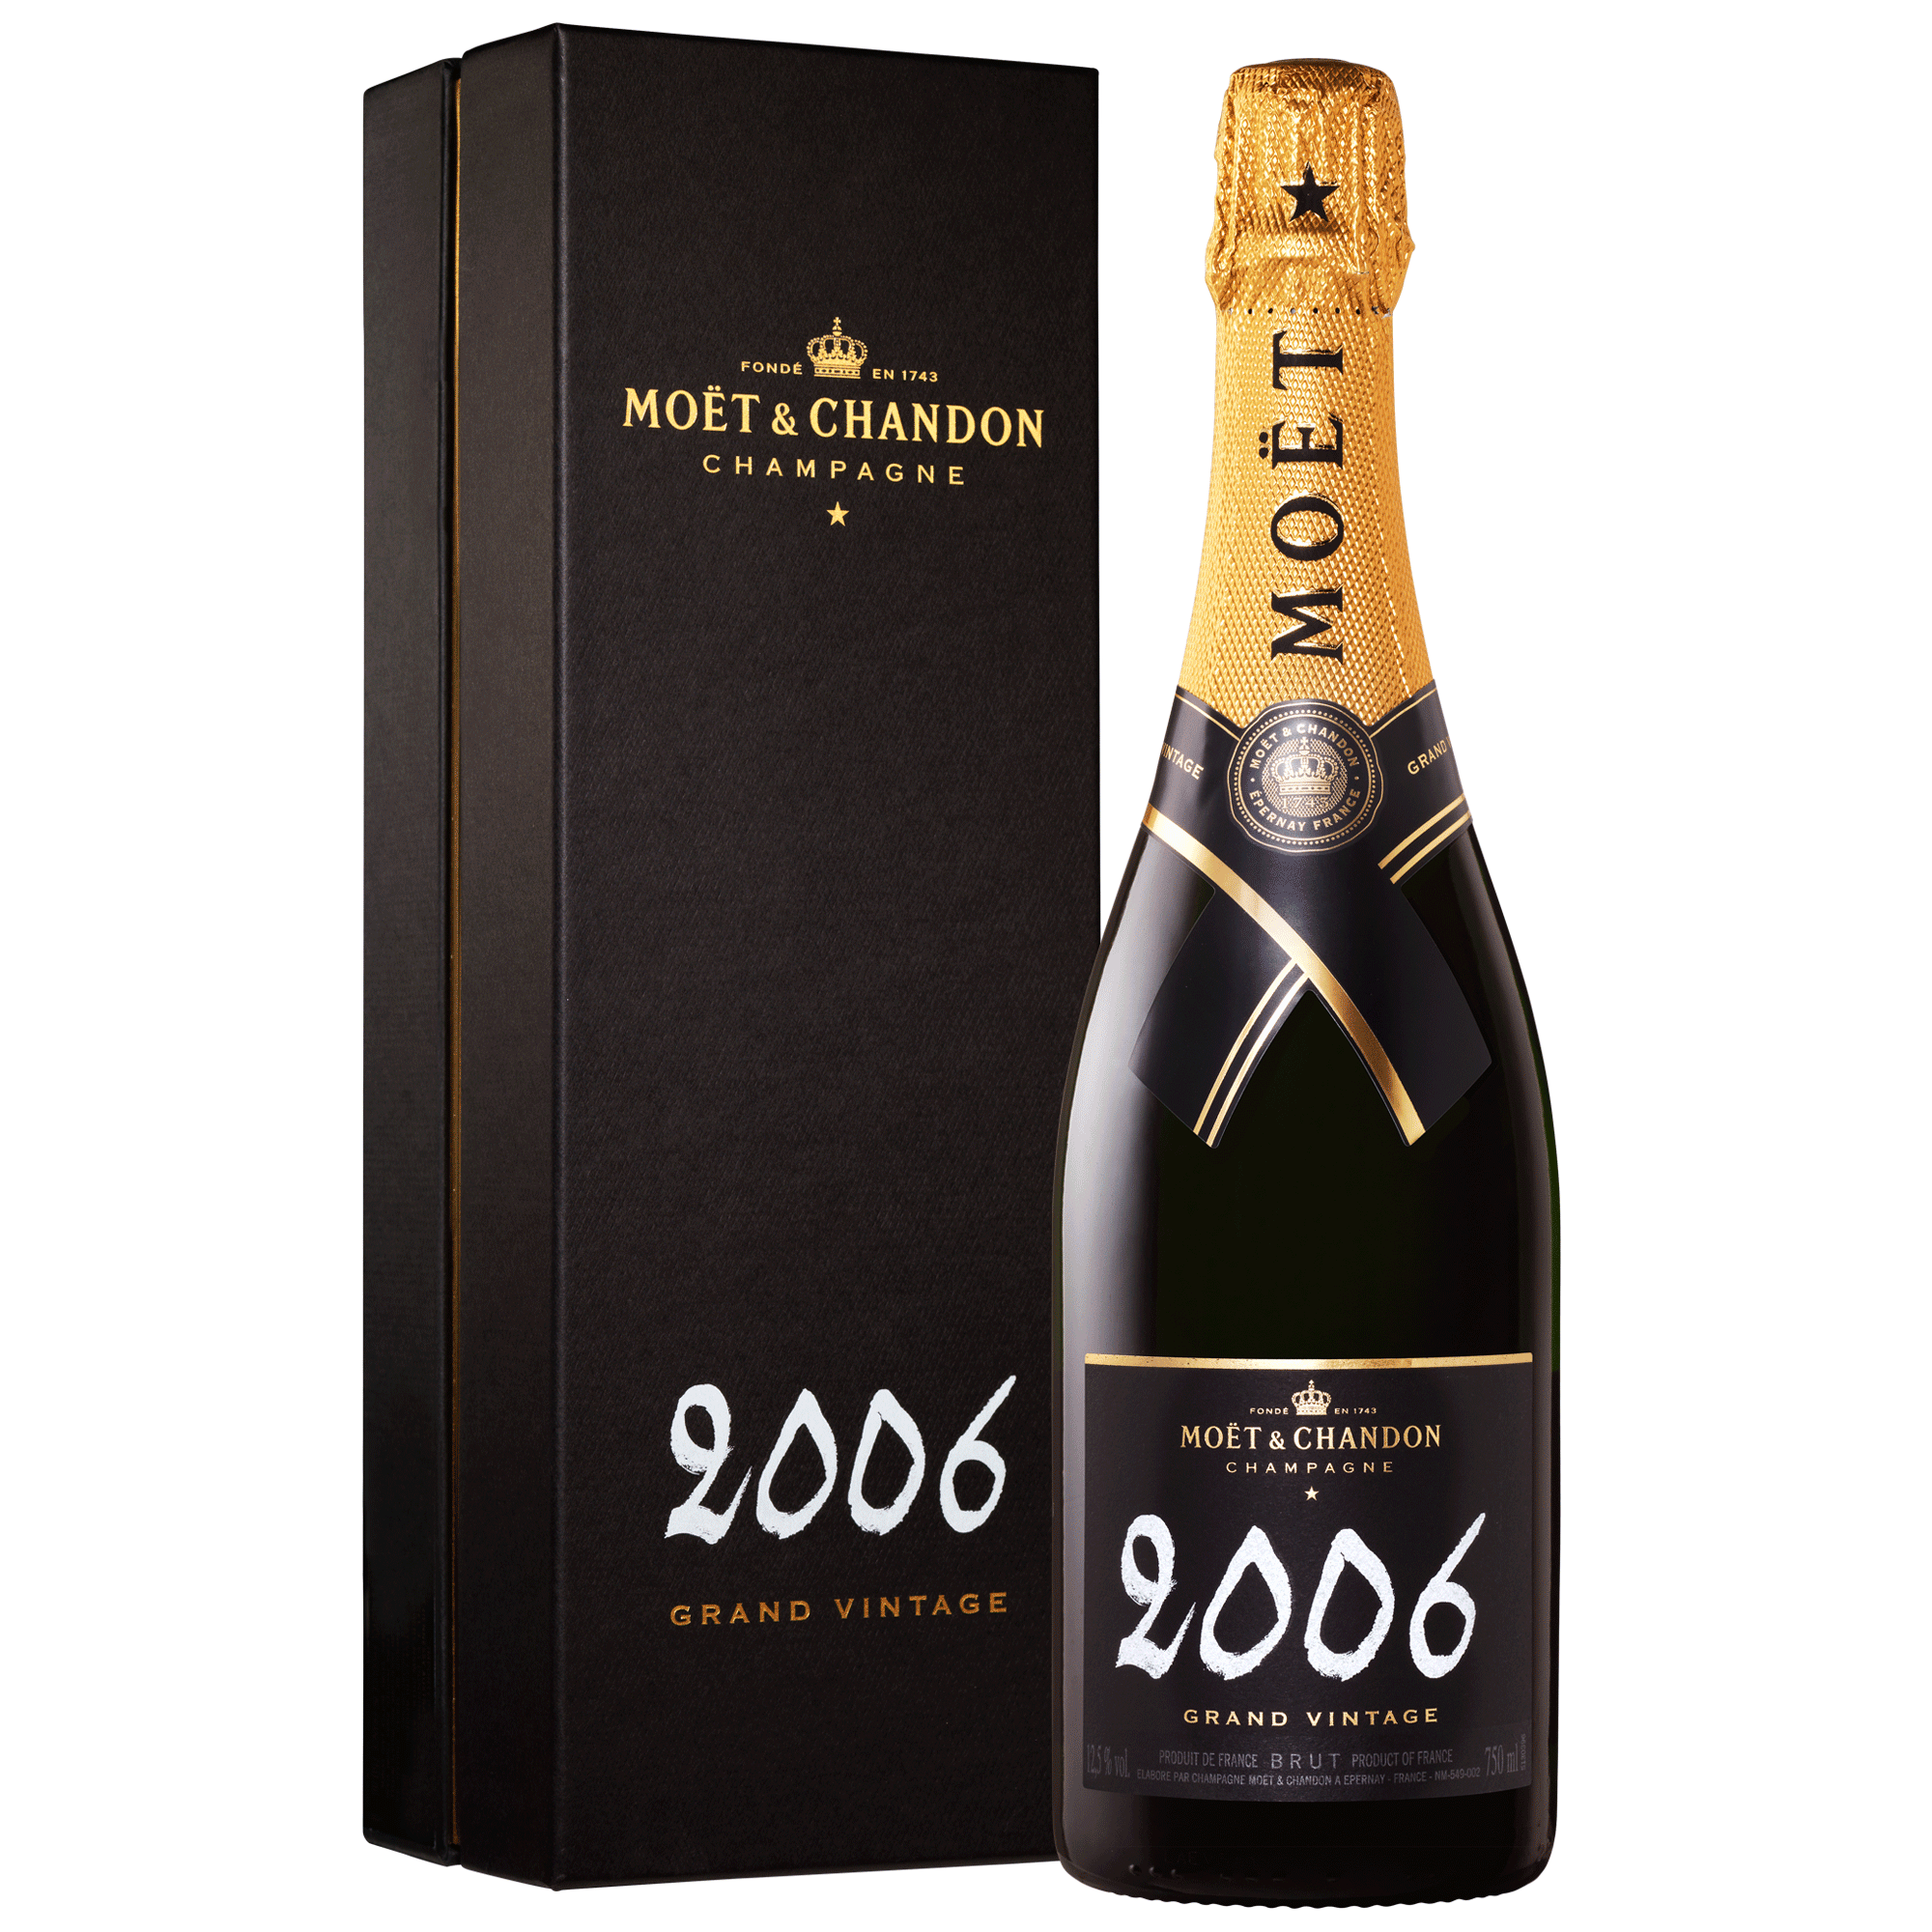 2012 Moet and Chandon Grand Brut Vintage Champagne - click image for full description